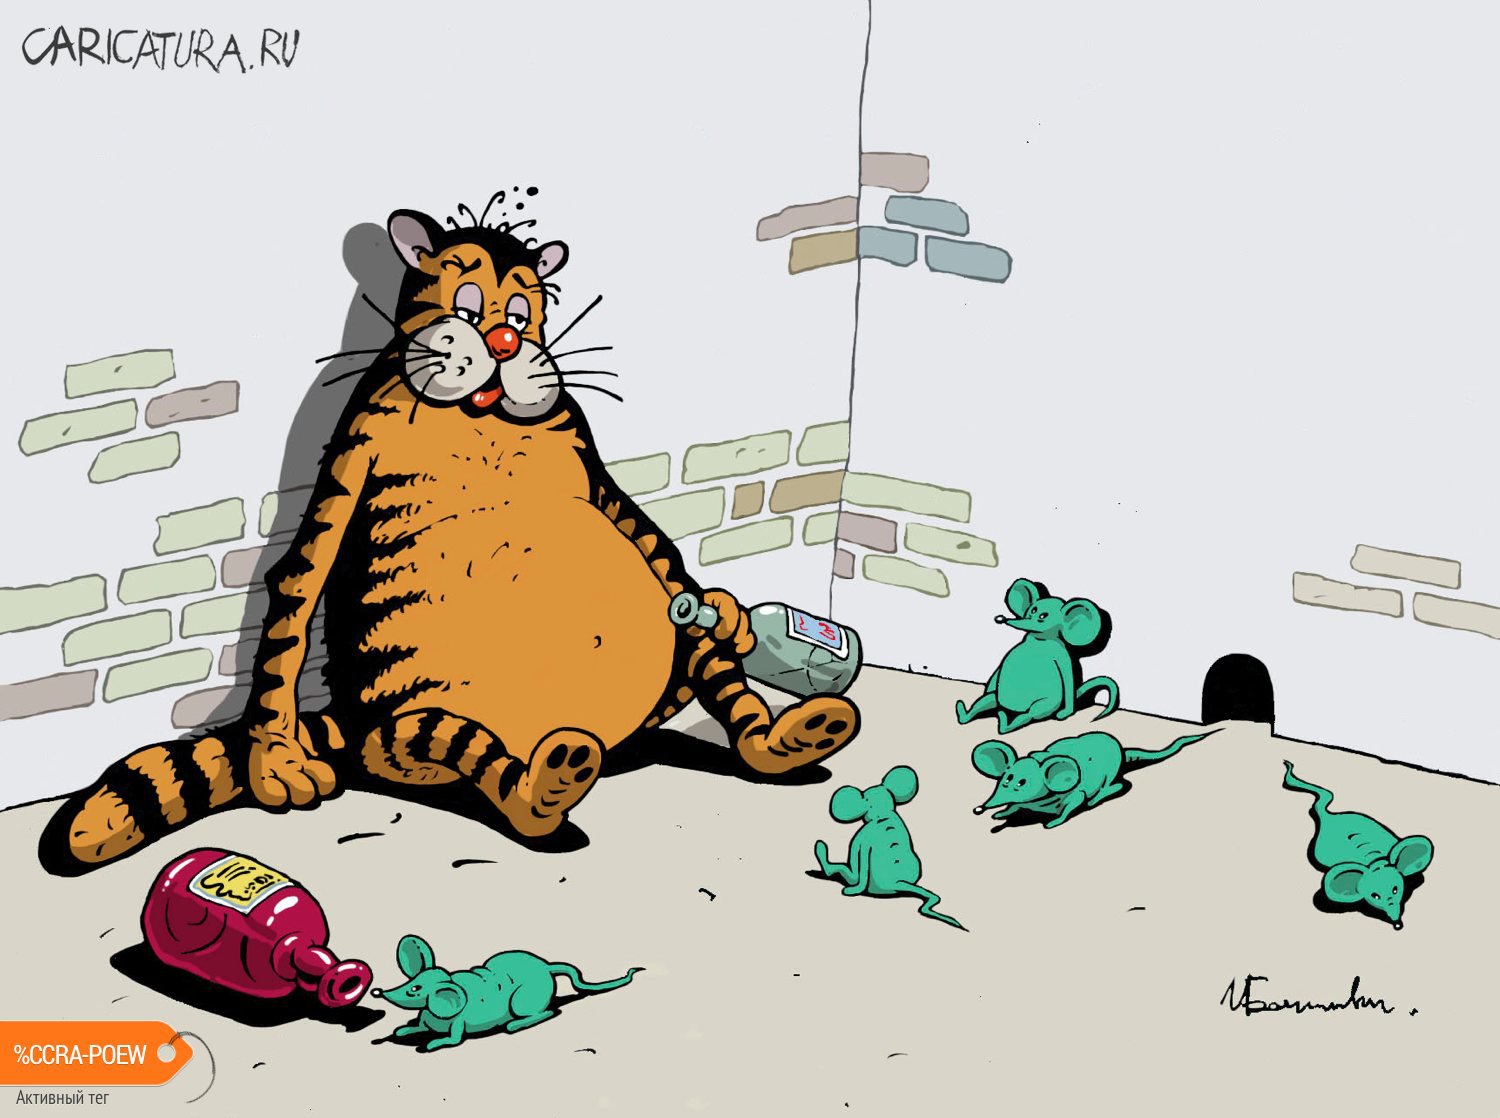 Карикатура "Кот и мышки зеленые", Игорь Елистратов